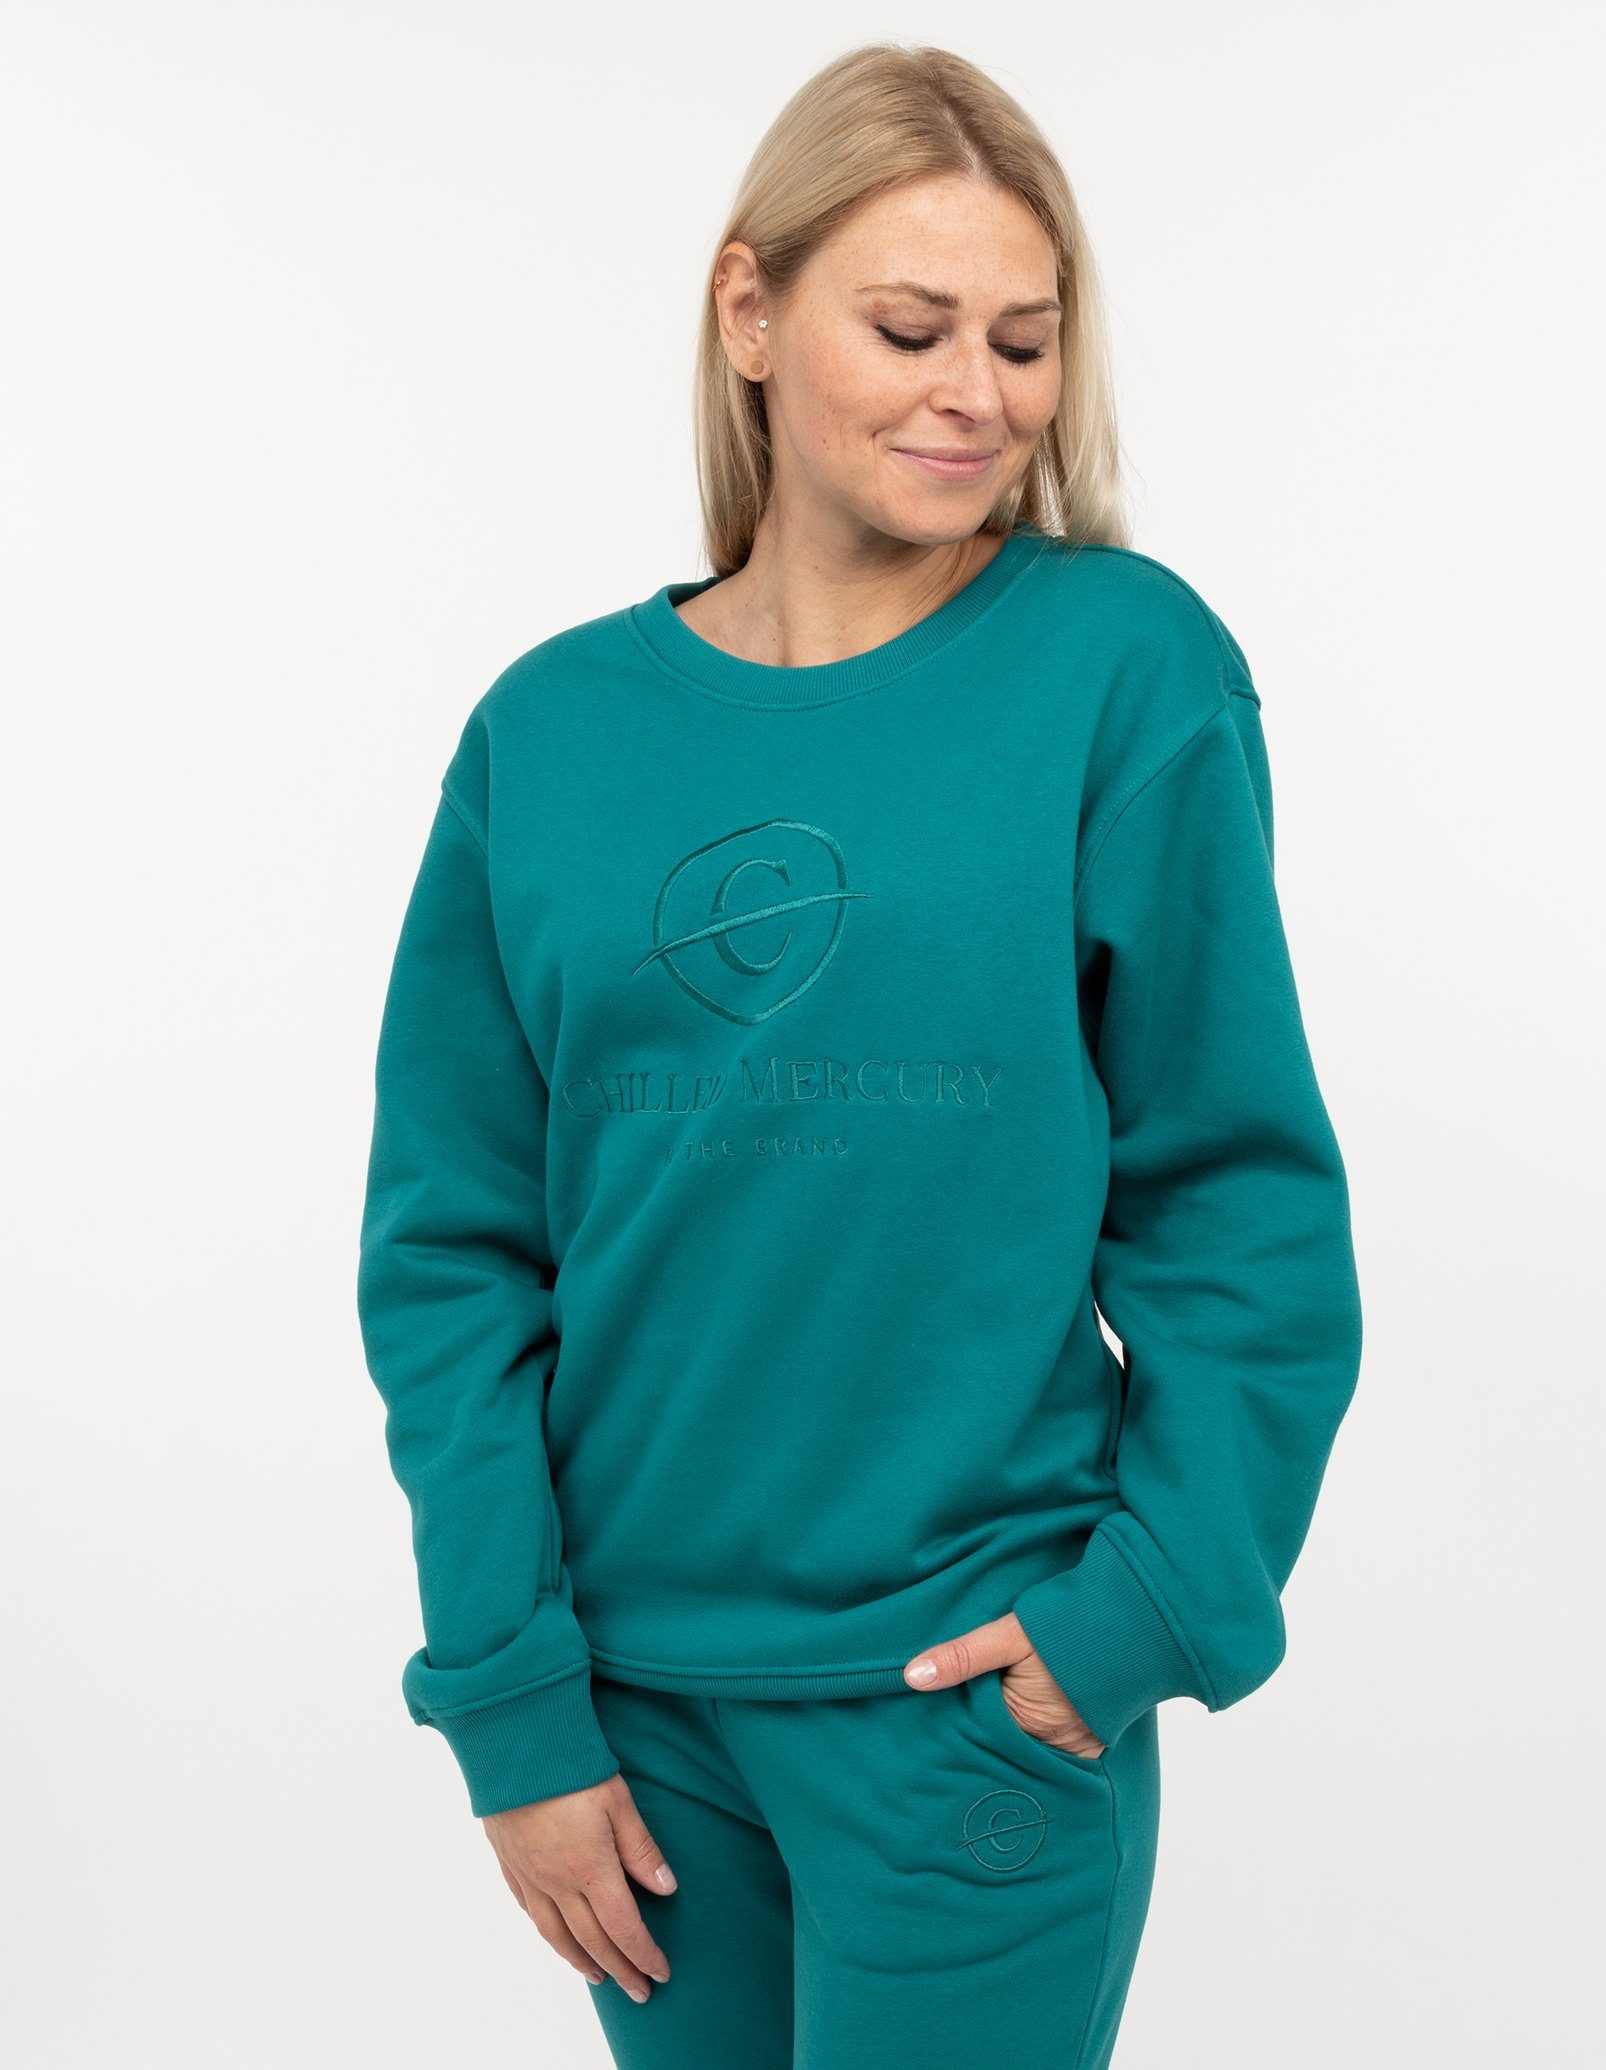 Chilled Mercury Sweatshirt Pullover / Damen Grün